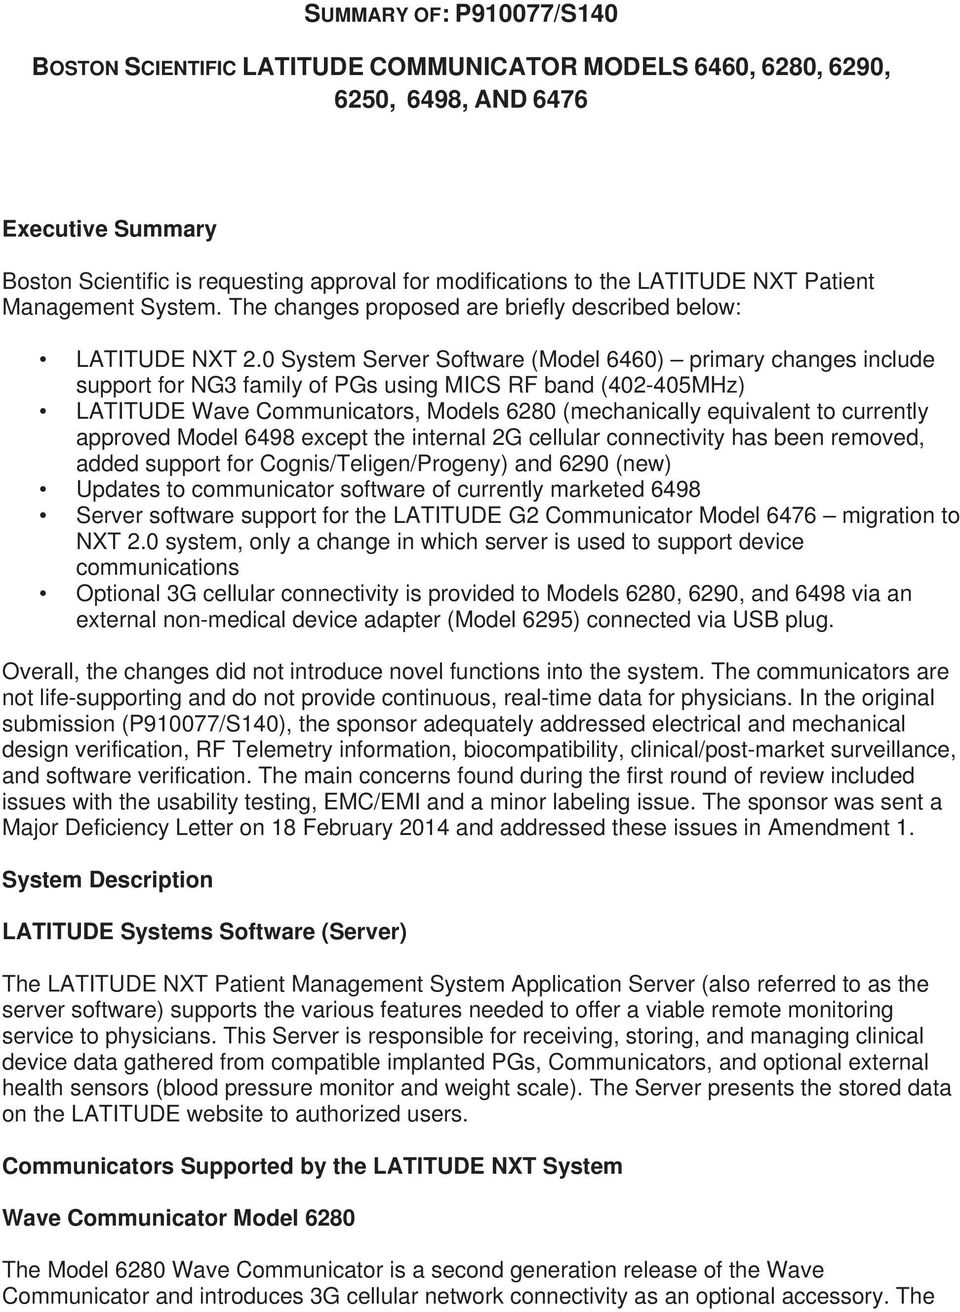 Summary Of P910077 S140 Boston Scientific Latitude Communicator